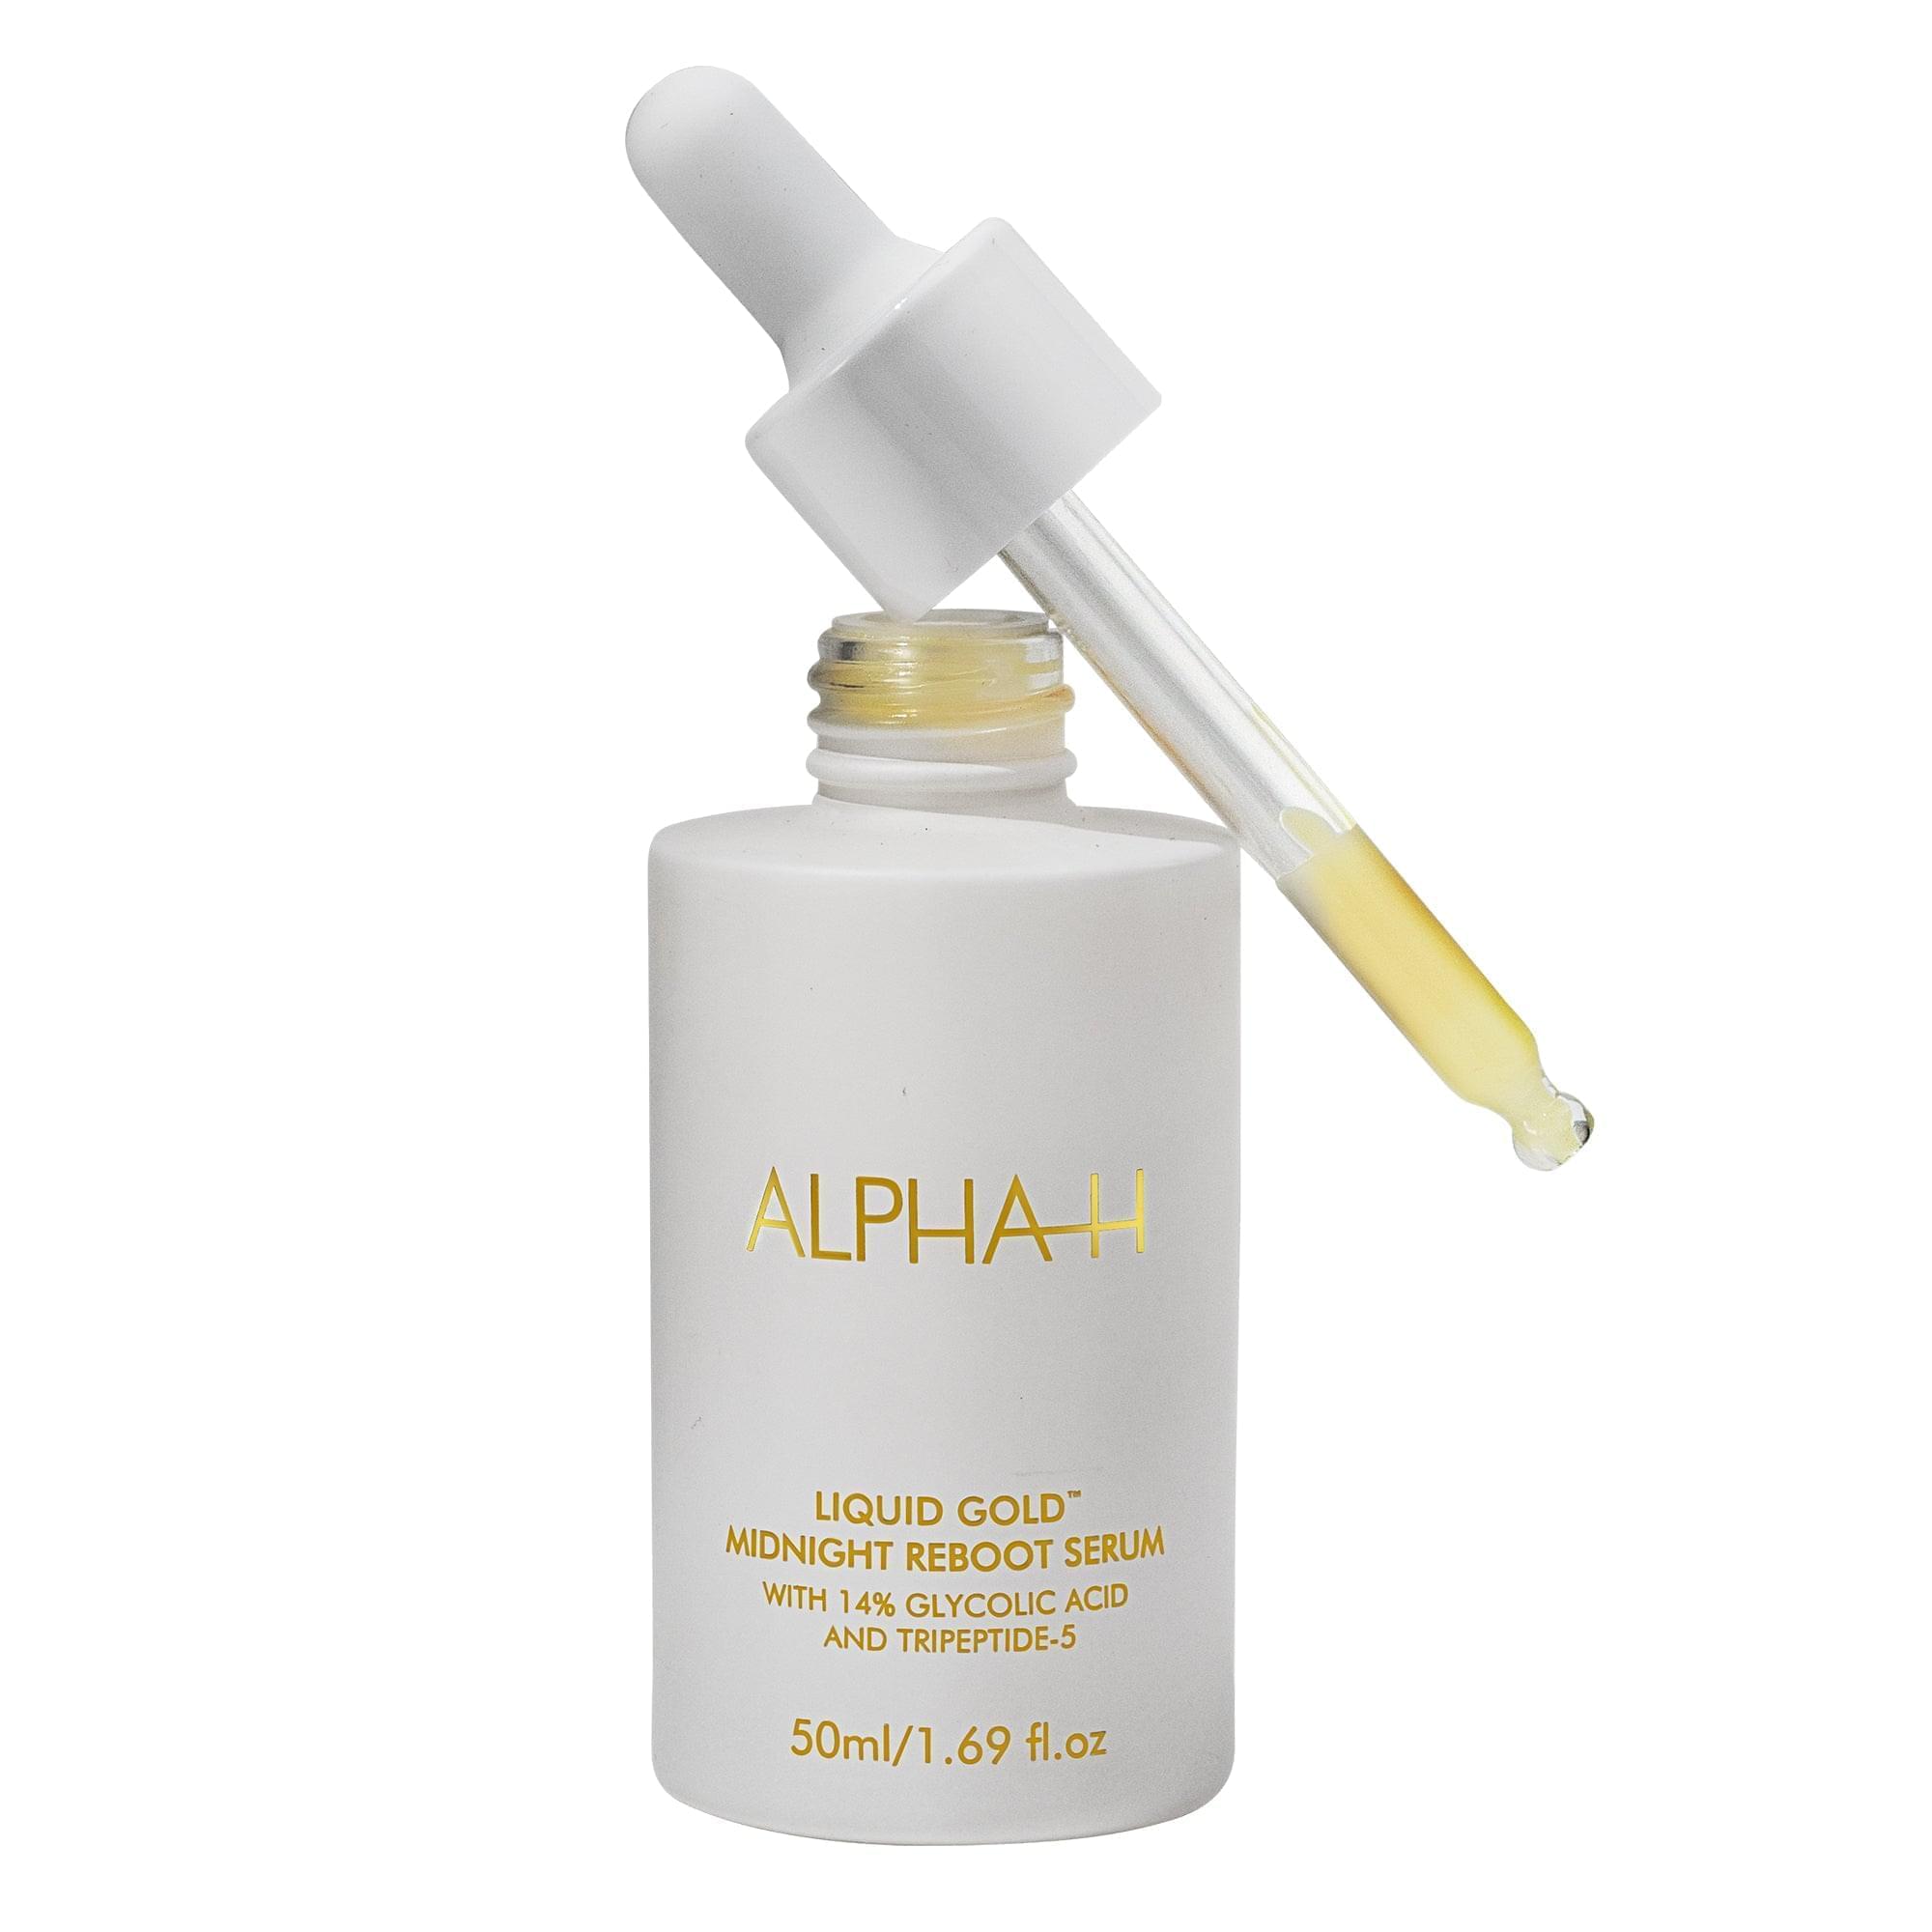 Ontdek de kracht van jeugdige vernieuwing met het Alpha-H Liquid Gold Midnight Reboot Serum. Dit krachtige anti-aging serum is speciaal ontworpen om je huid te transformeren en de tekenen van veroudering te bestrijden.